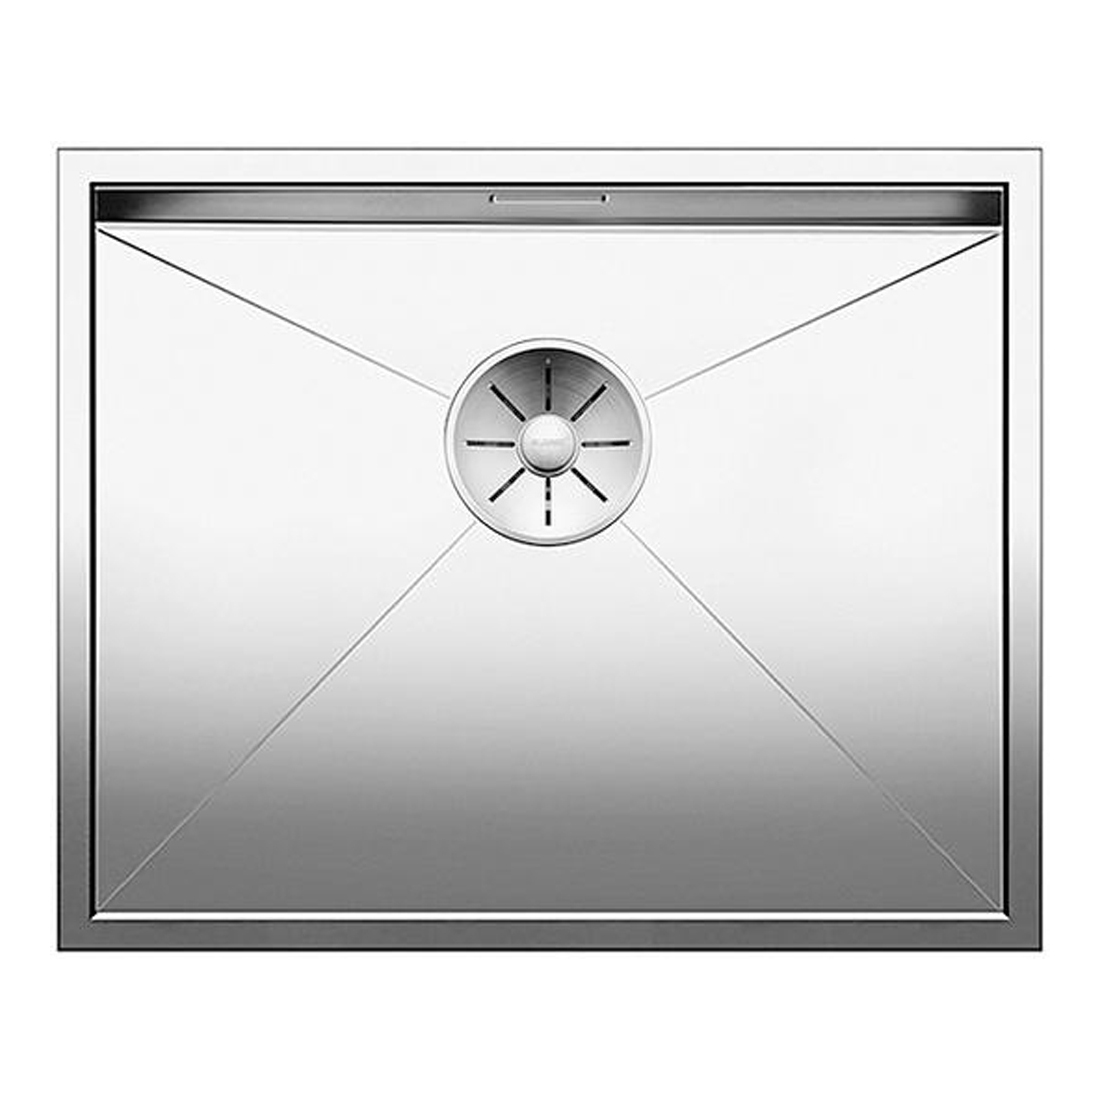 Кухонная мойка Blanco Zerox 500-U зеркальная полировка кухонная мойка blanco zerox 400 400 if зеркальная полировка